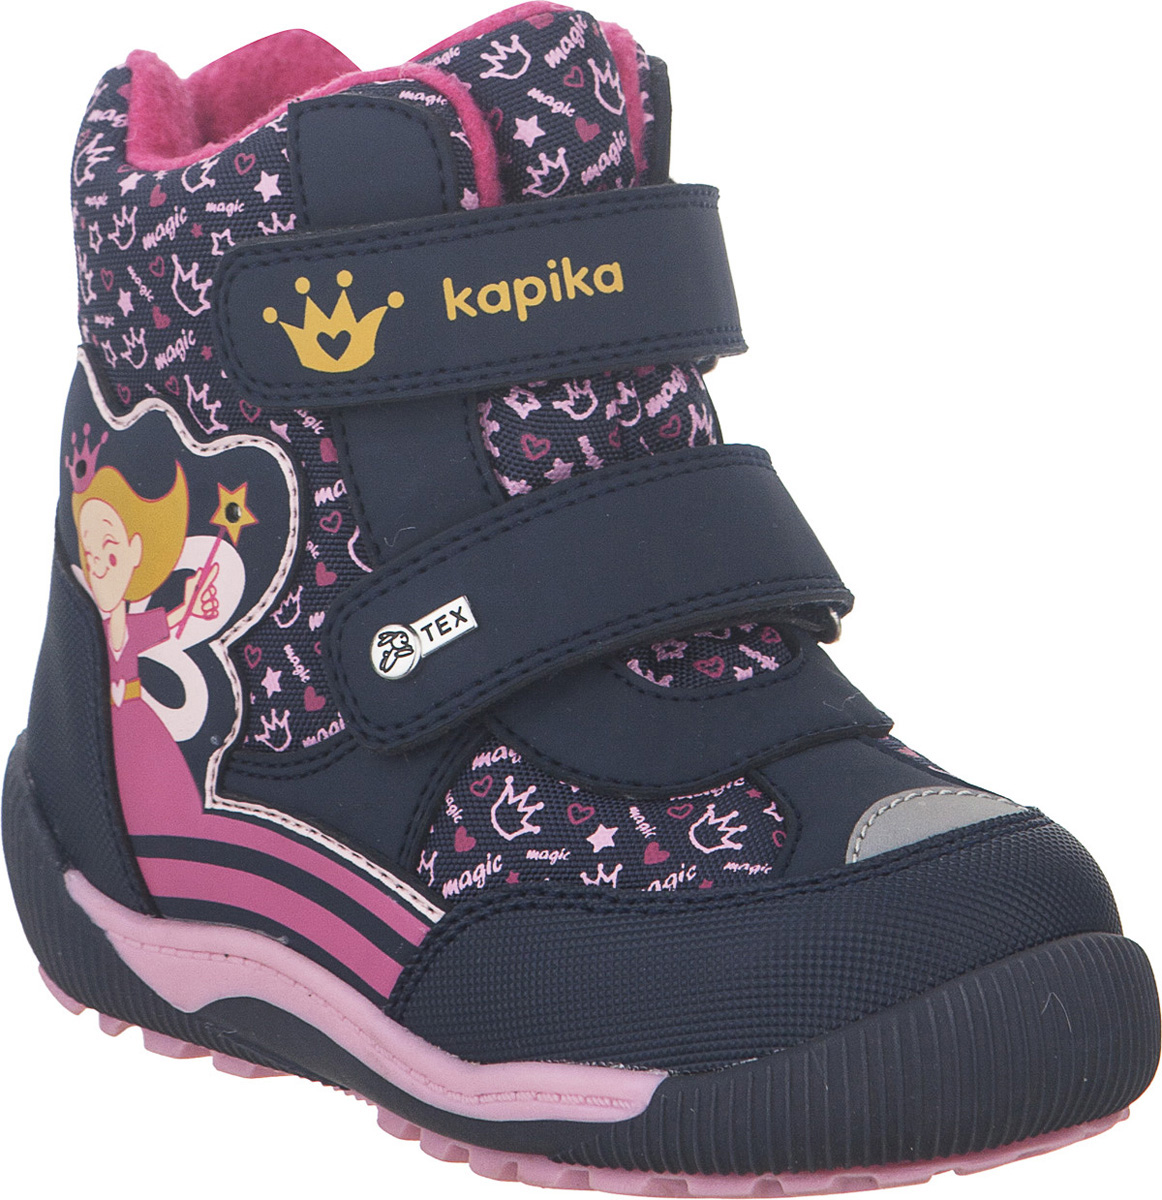 Ботинки для девочки Kapika KapiTEX, цвет: темно-синий. 41214-2. Размер 23